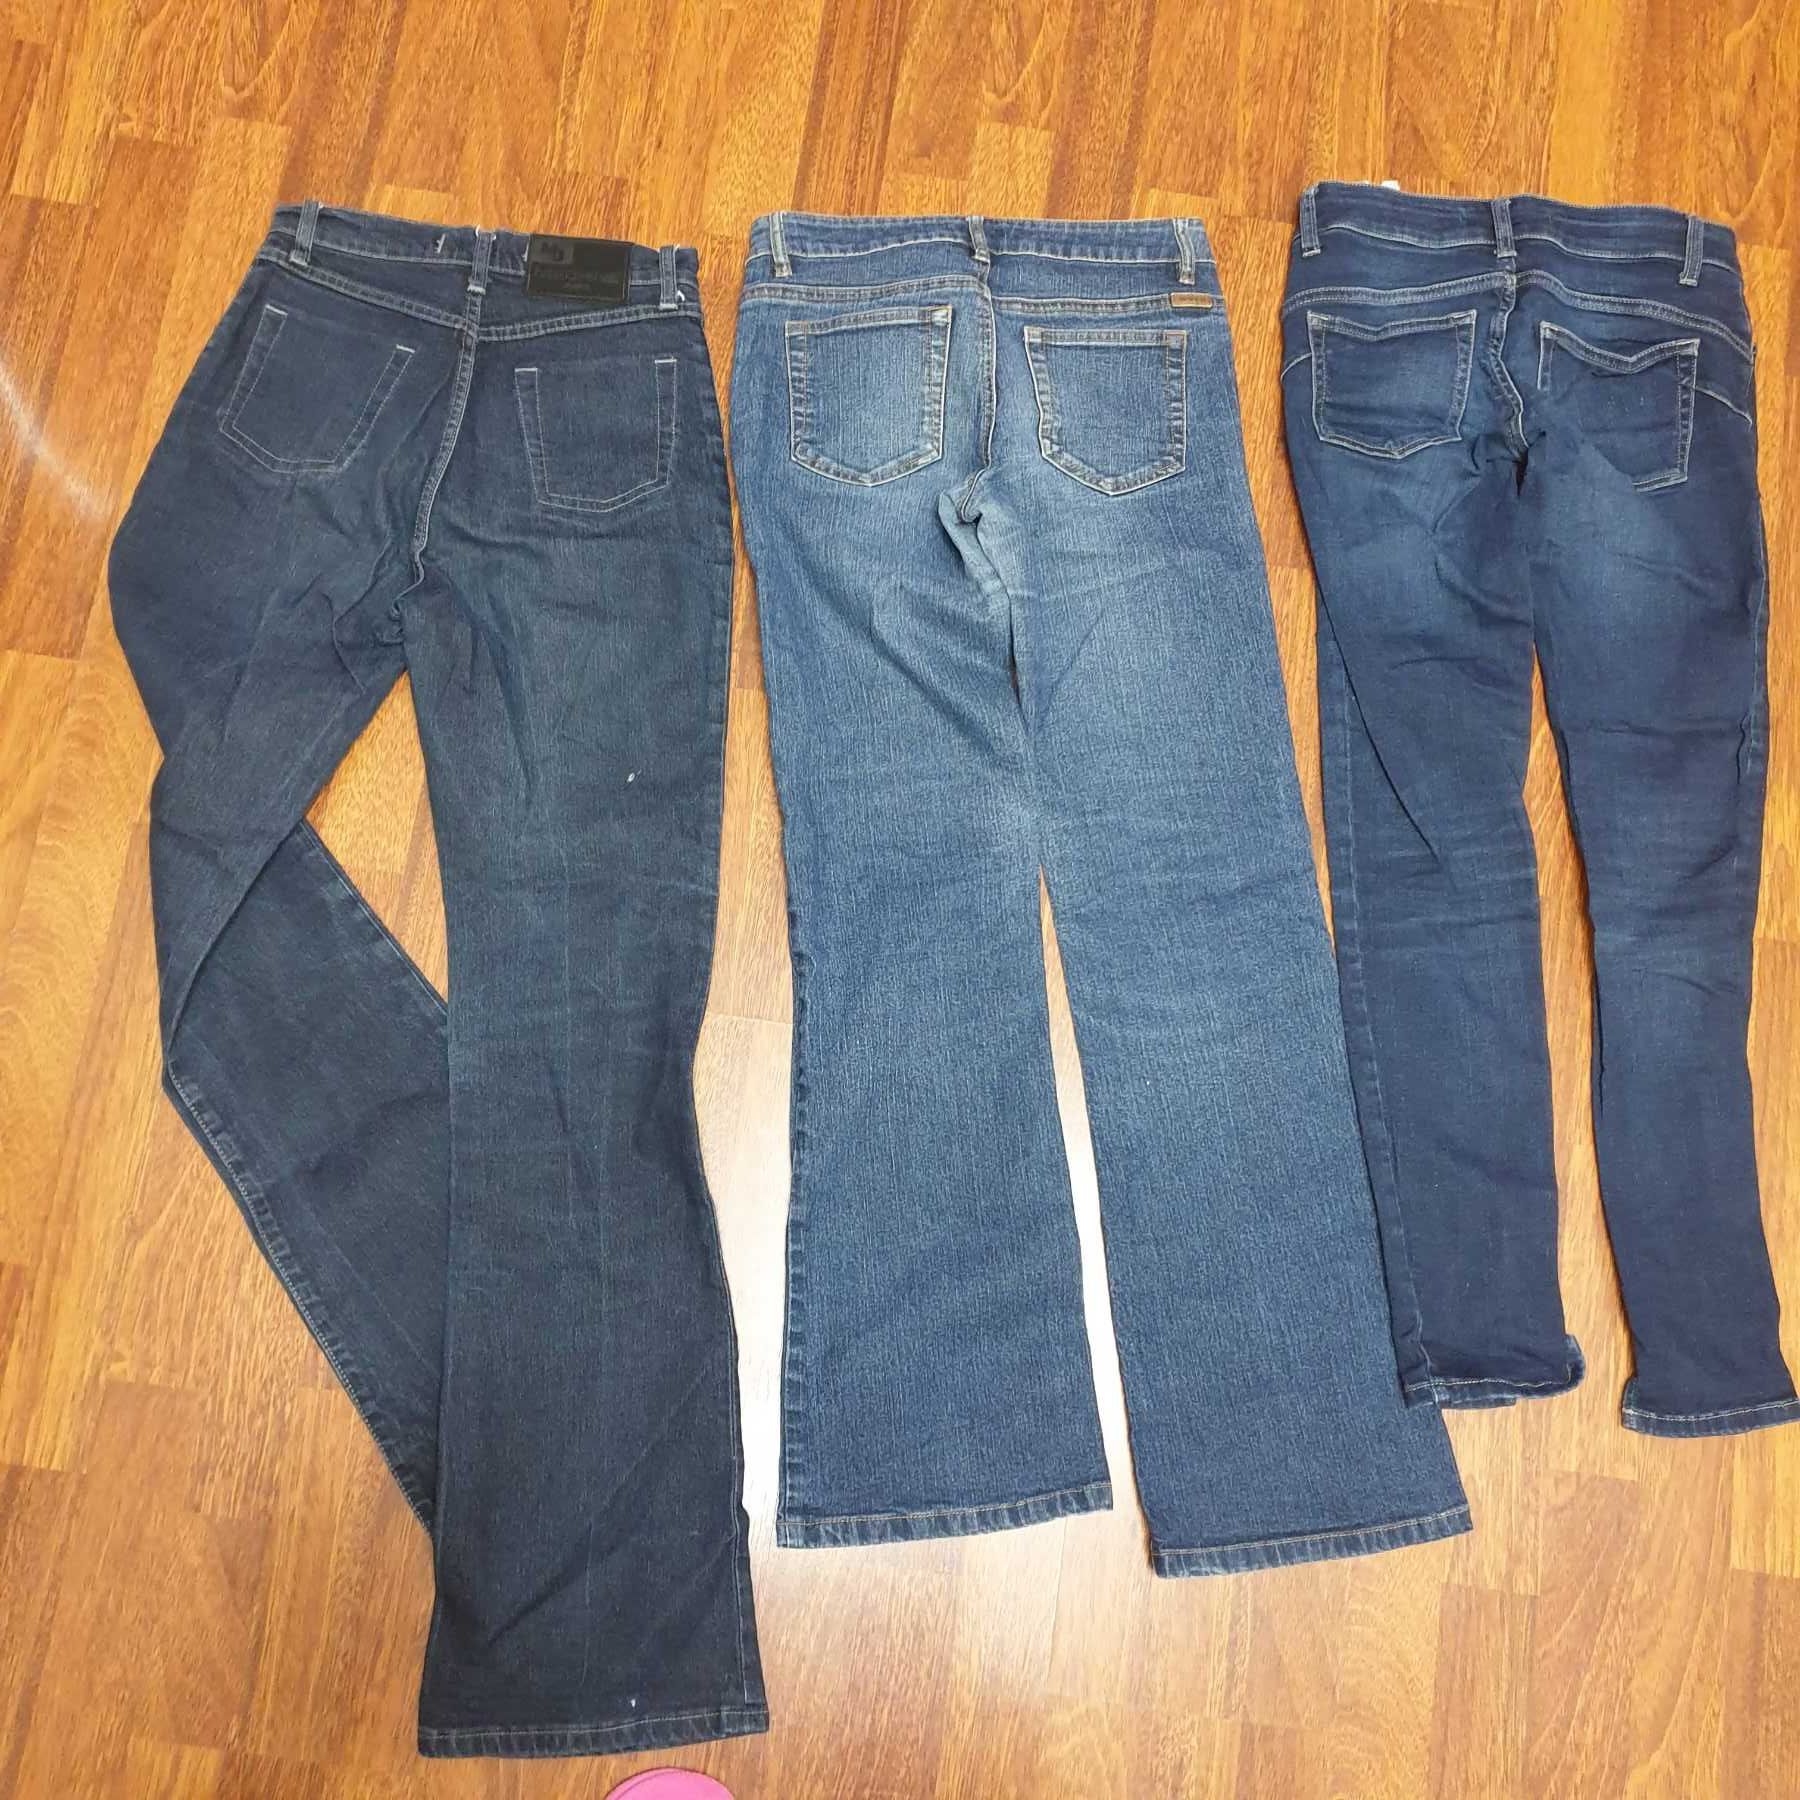 Джинсы ТМ Liu Jeans, Moto, Machine Jeans, стрейчевые в идеальном состо